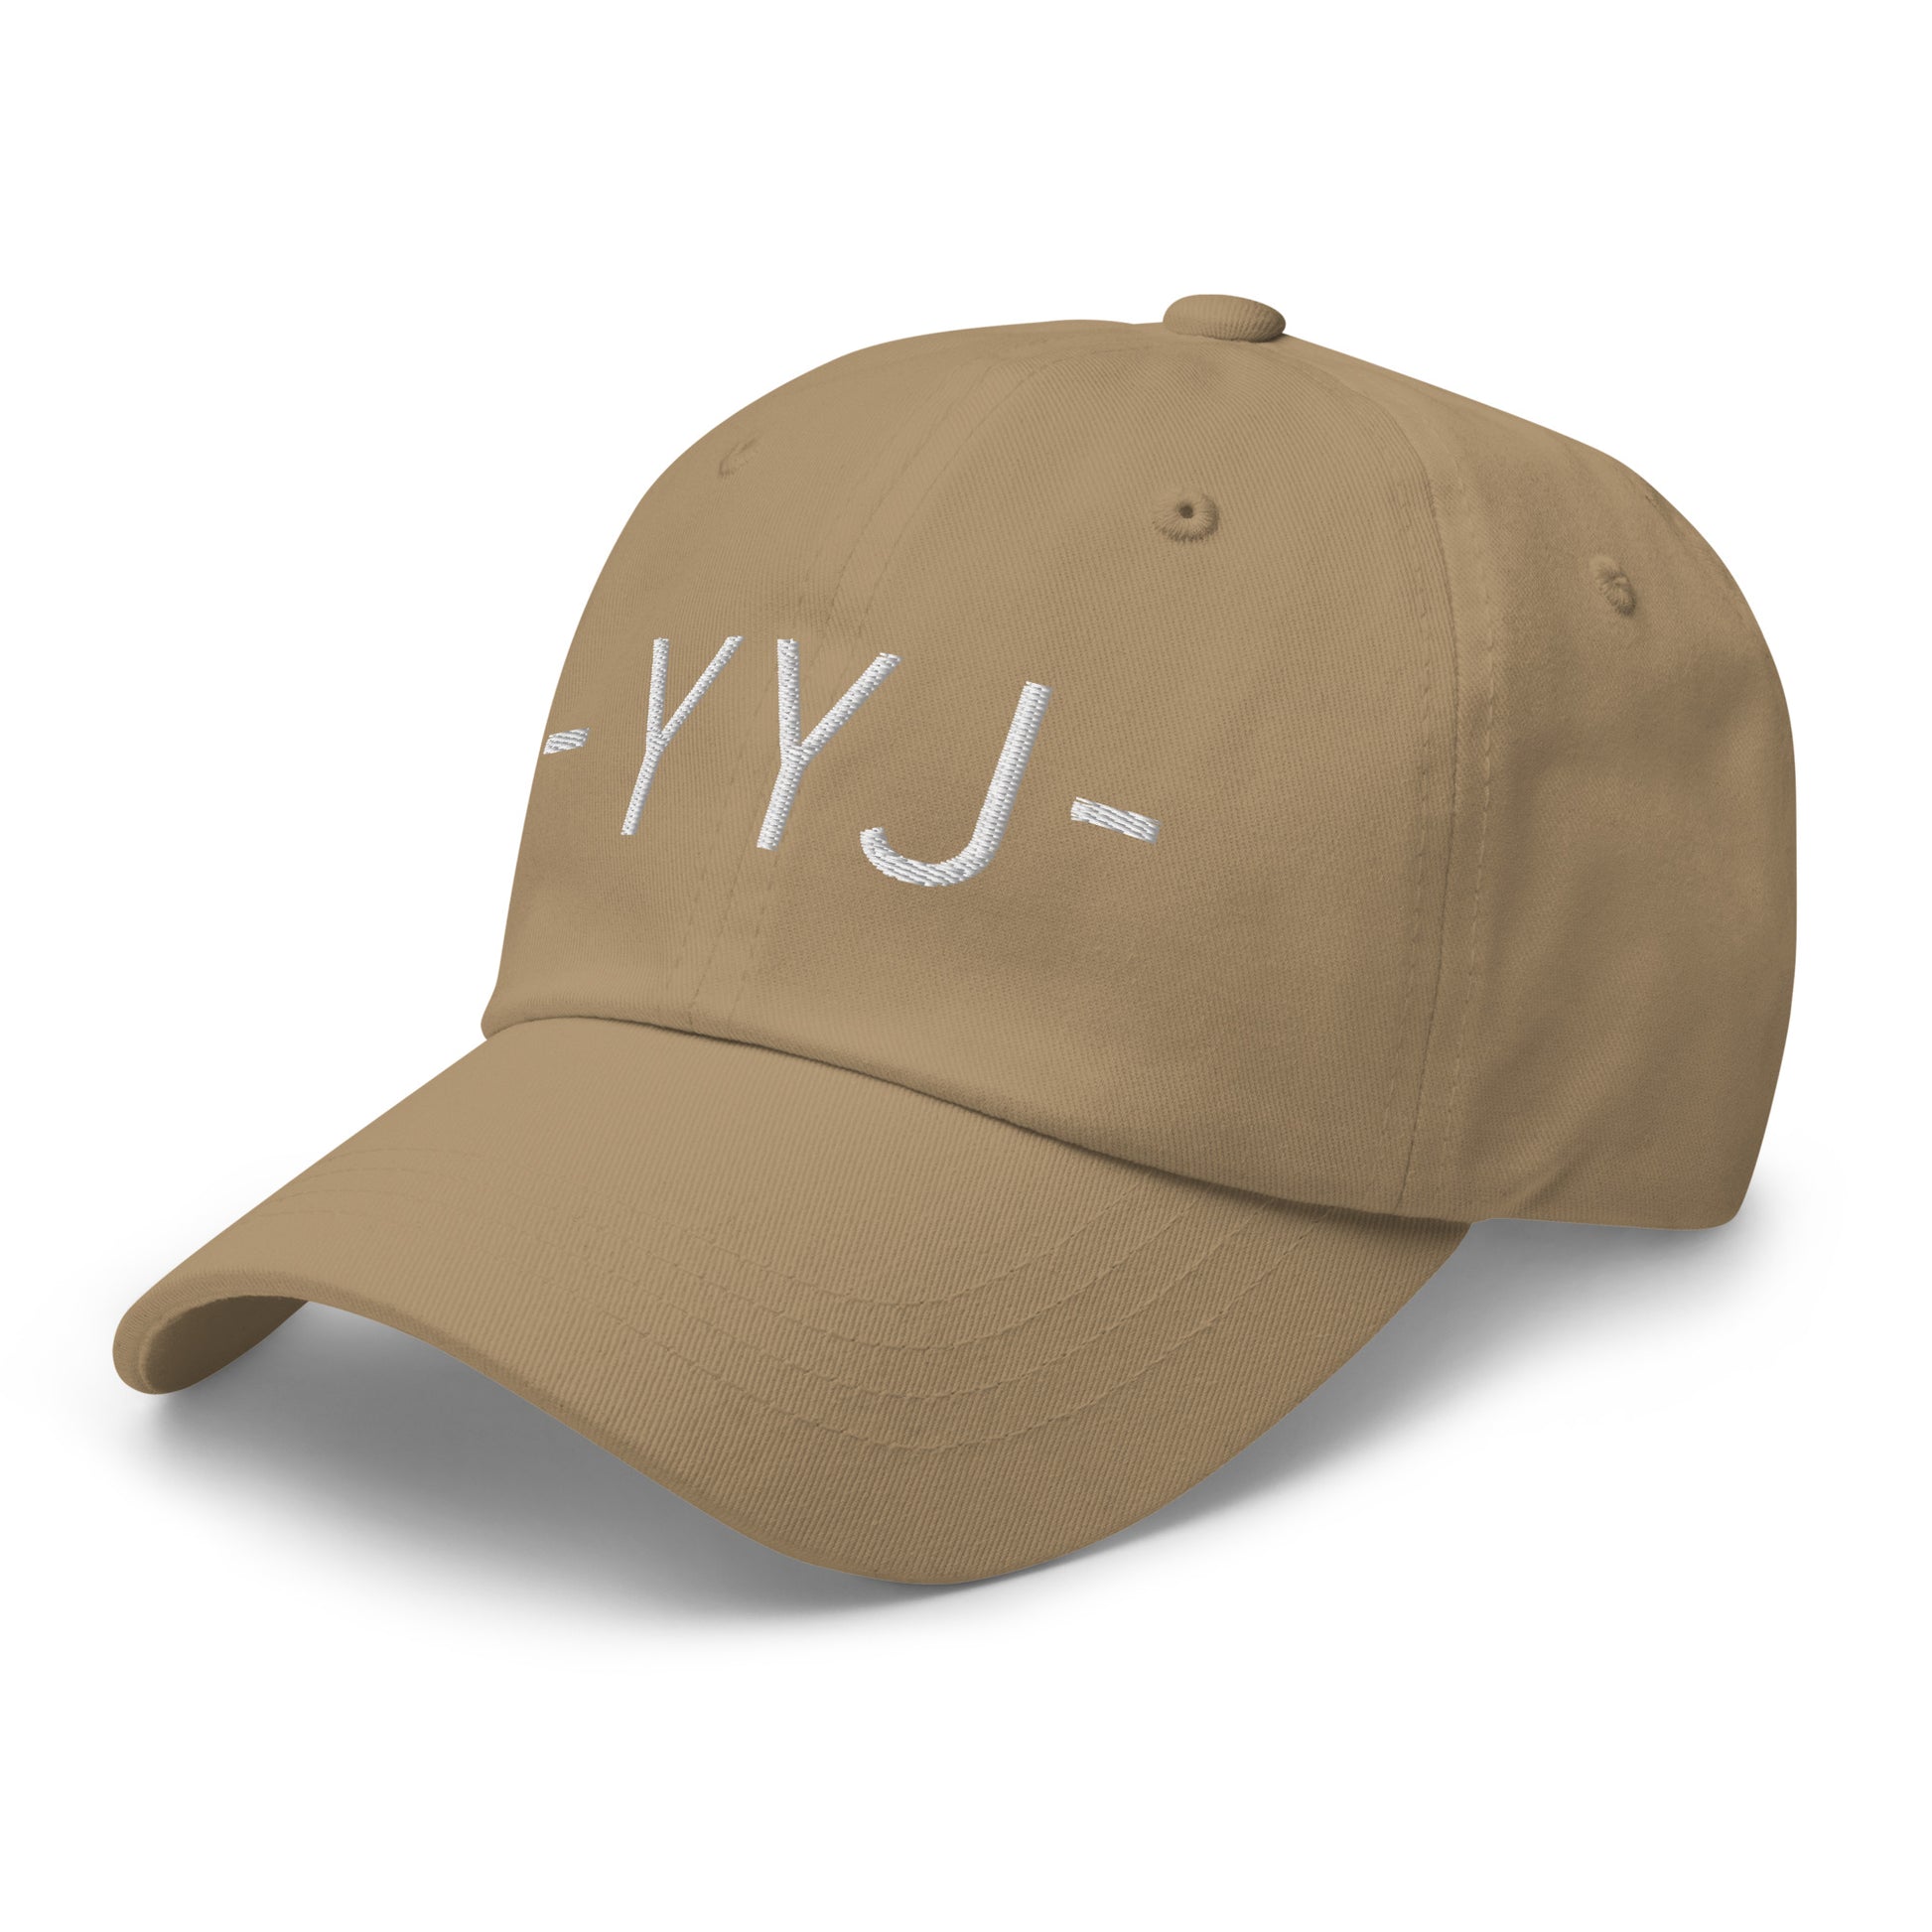 Souvenir Baseball Cap - White • YYJ Victoria • YHM Designs - Image 22